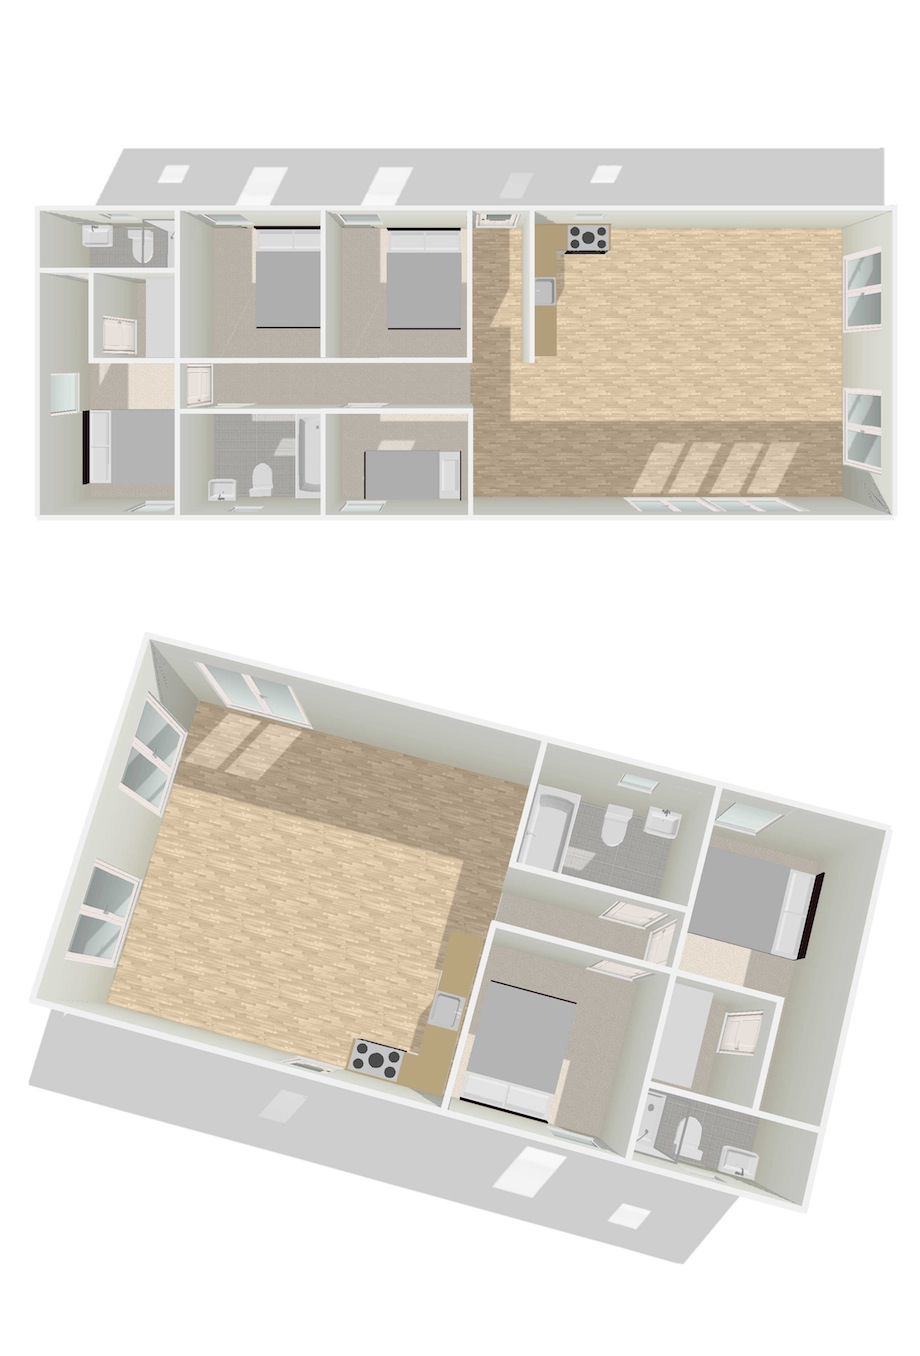 Mobile-Home-Floor-Plans-3d-p4